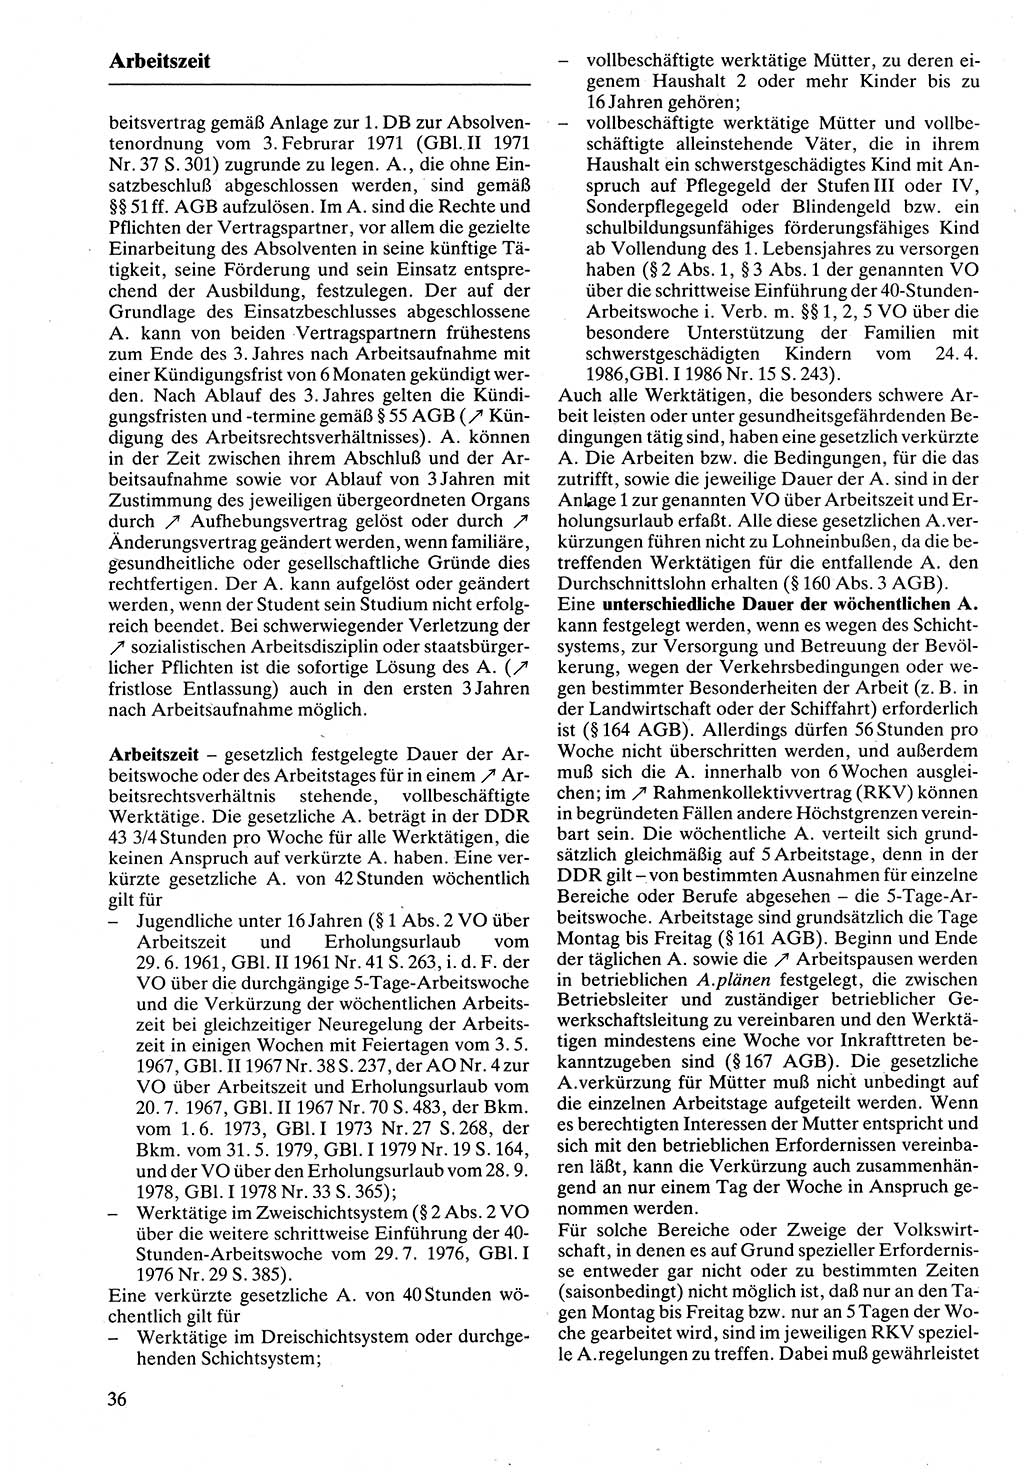 Rechtslexikon [Deutsche Demokratische Republik (DDR)] 1988, Seite 36 (Rechtslex. DDR 1988, S. 36)